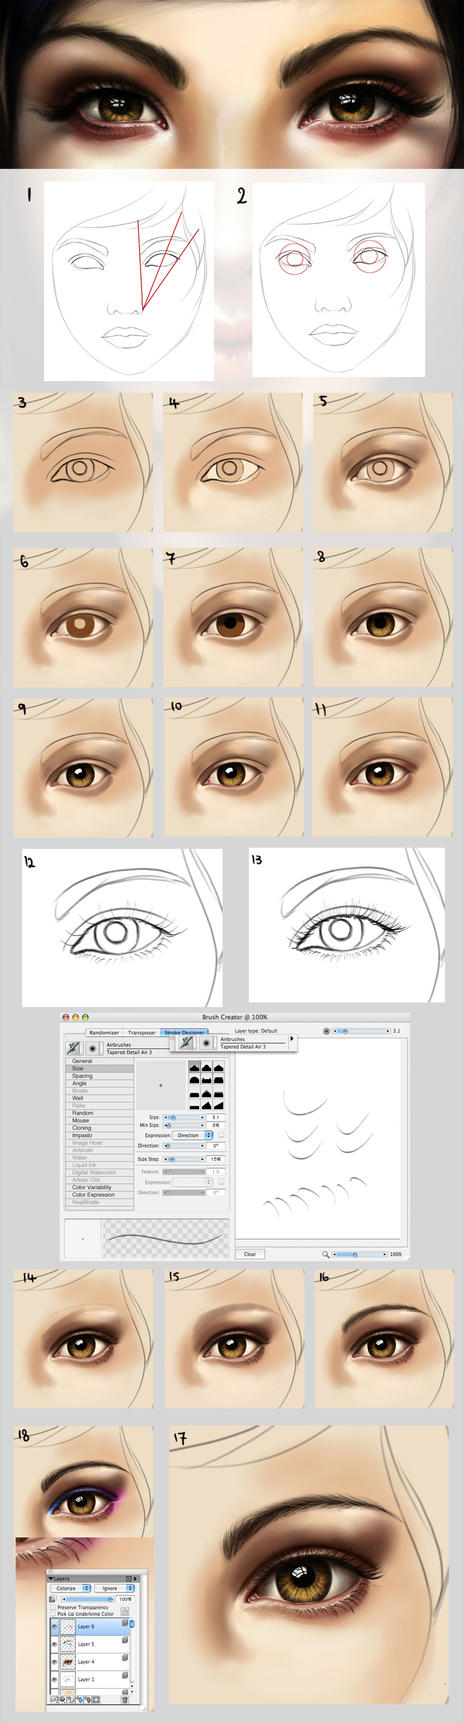 -http://th00.deviantart.net/fs44/PRE/f/2009/114/7/0/Eye_tutorial___an_update_by_acidlullaby.jpg